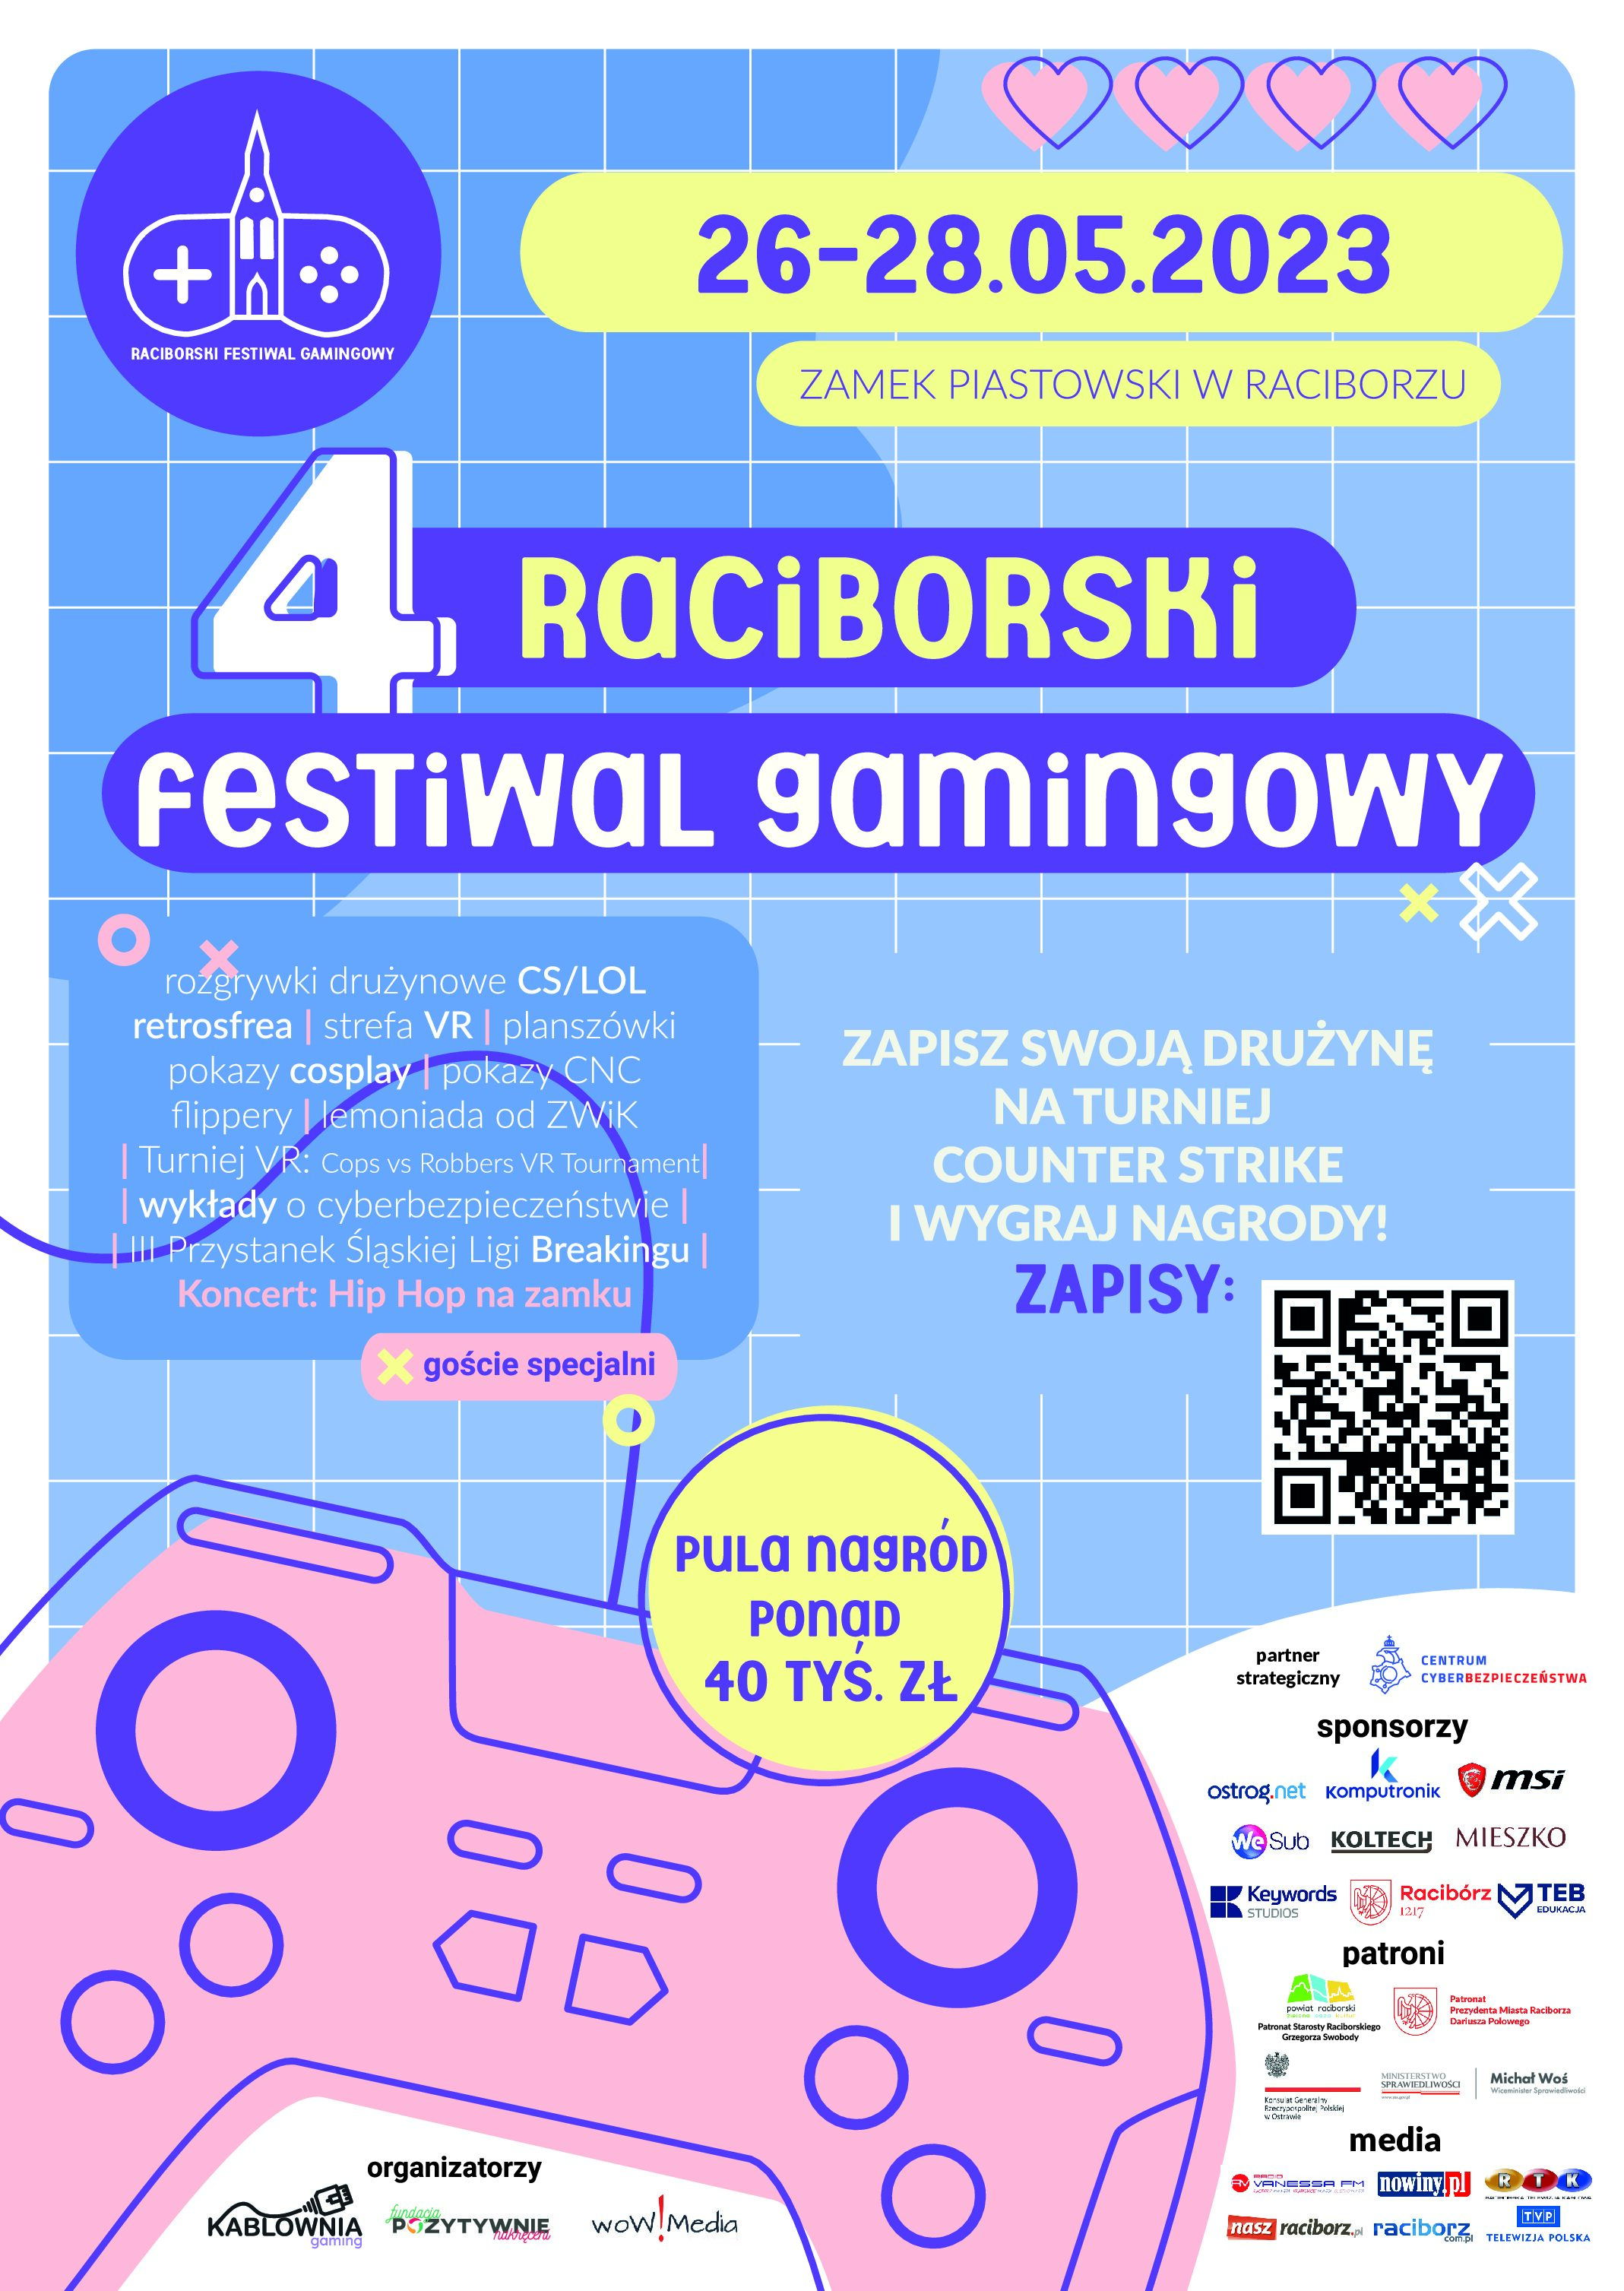 Raciborski Festiwal Gamingowy na Zamku Piastowskim w Raciborzu – zaproszenie